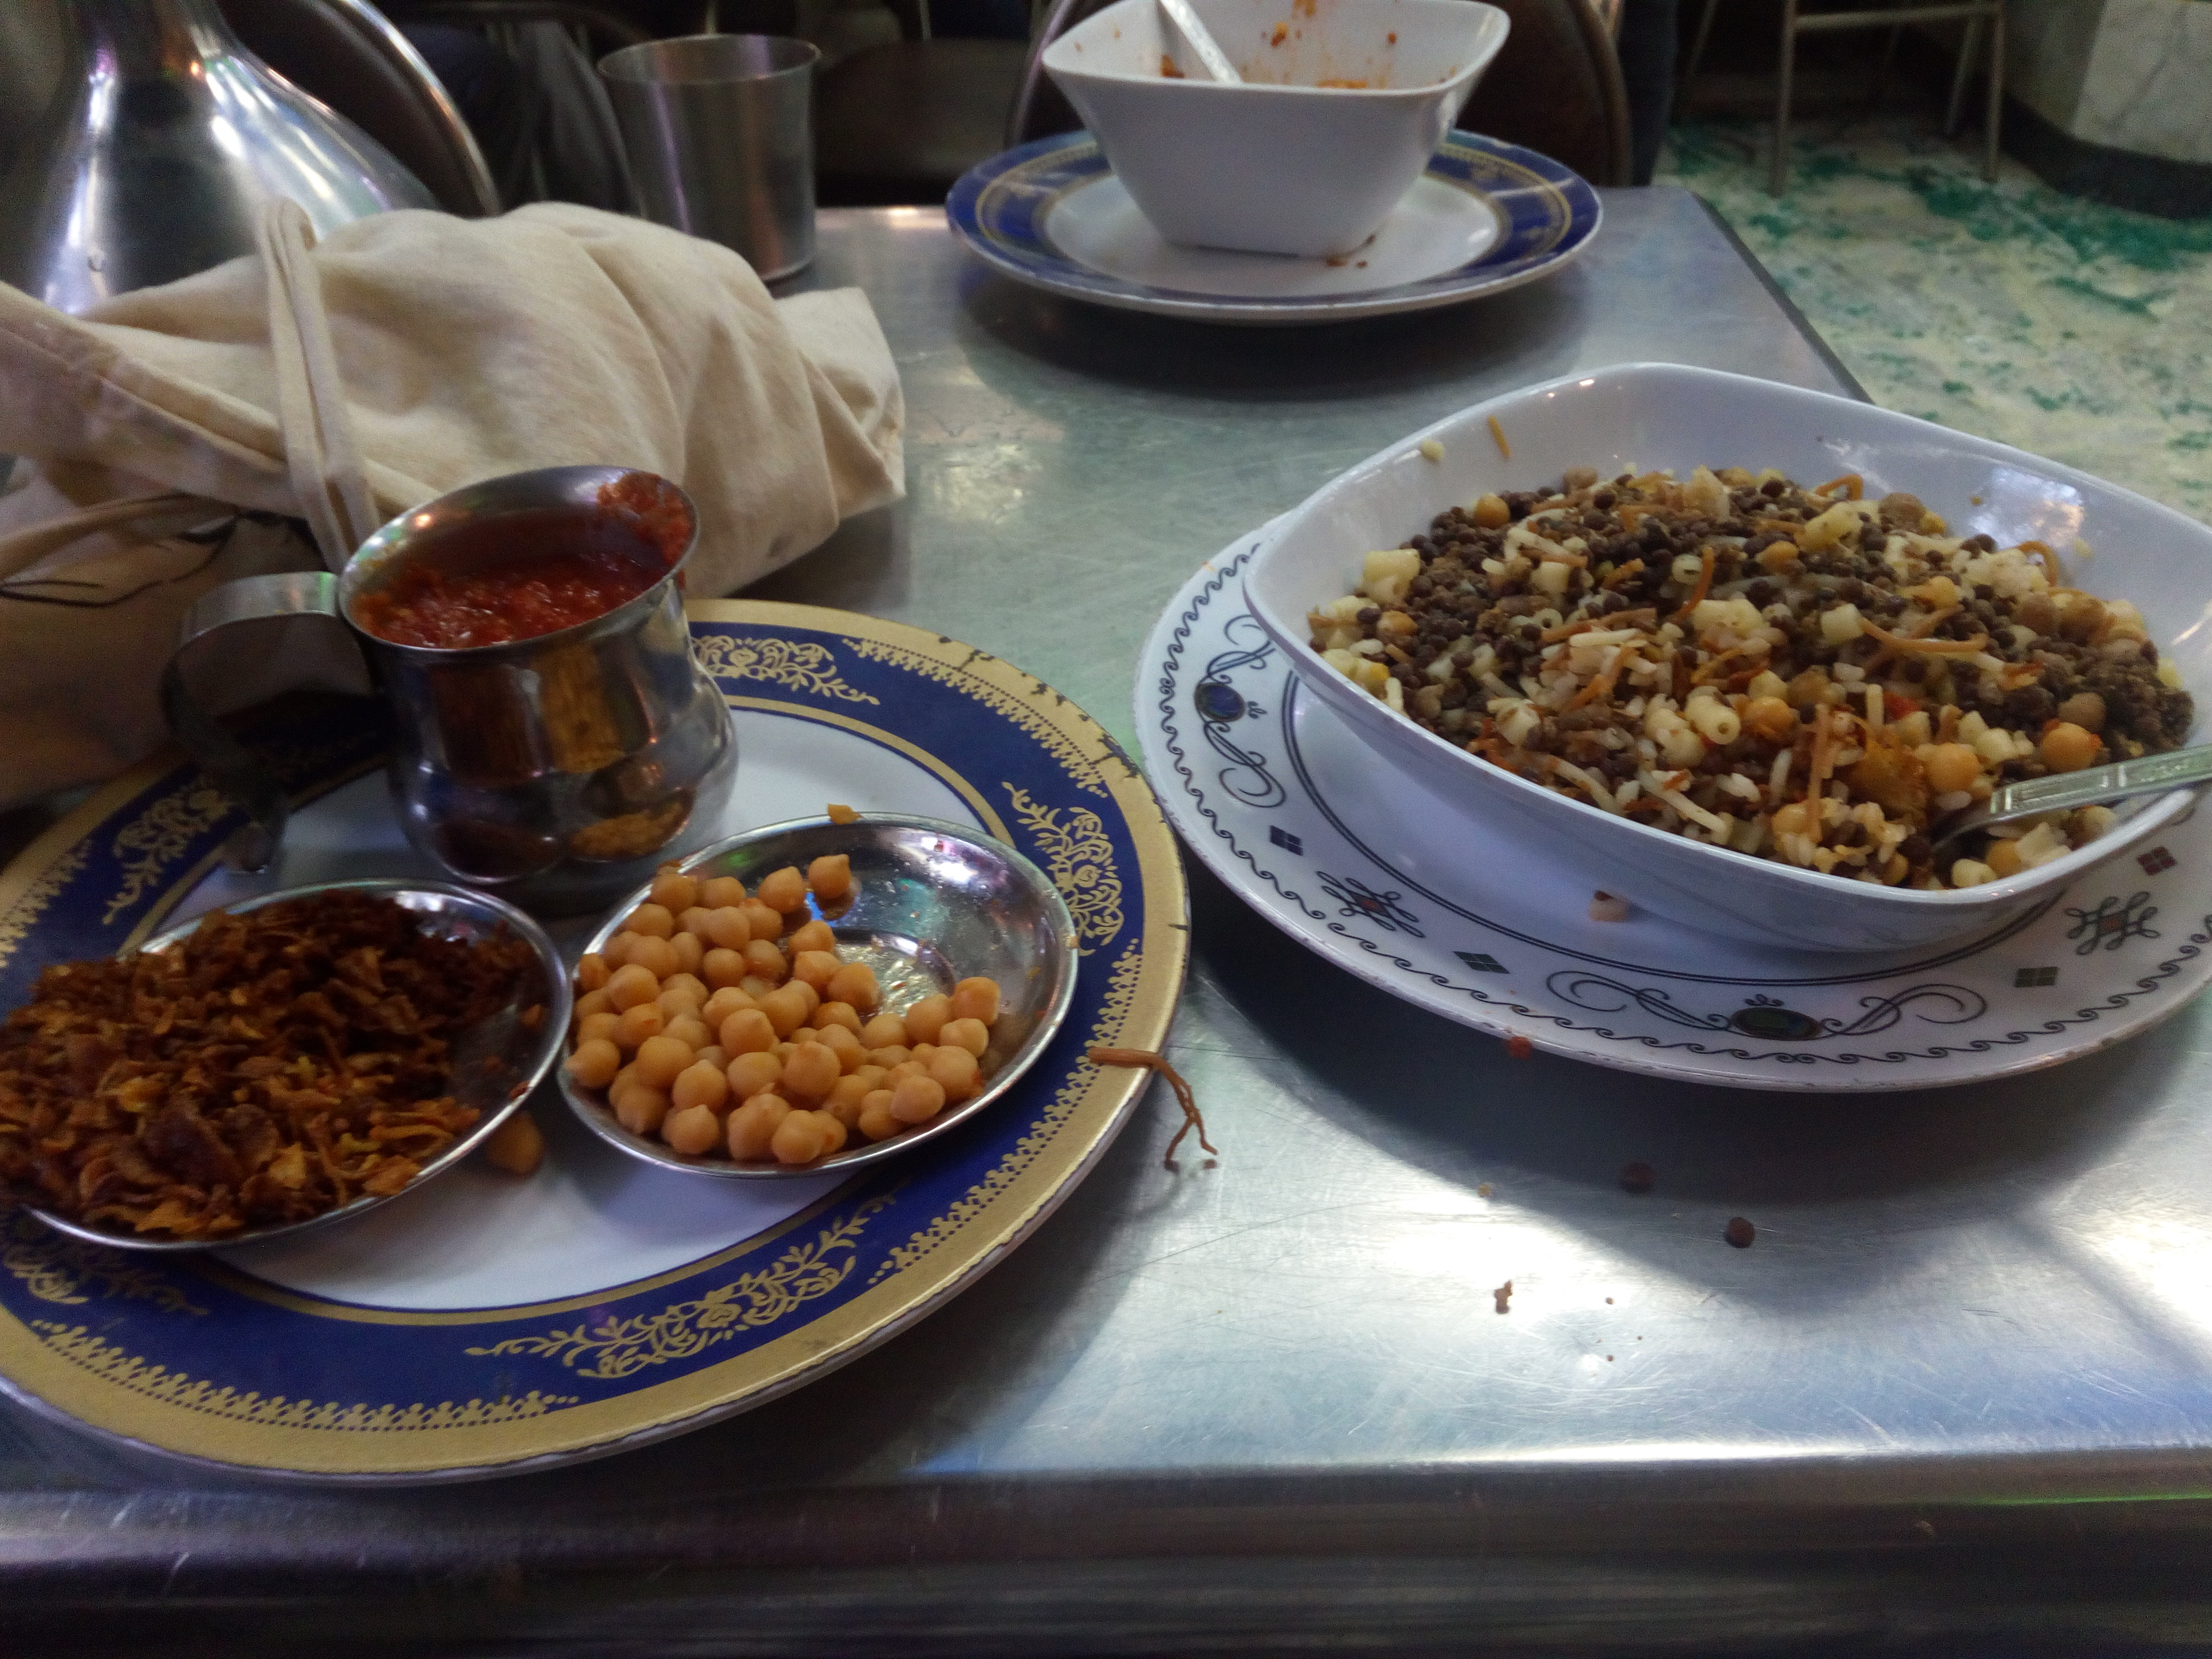 وجبة كشري مصرية نموذجية - القاهرة - مصر. الصورة: ملهم الملائكة 